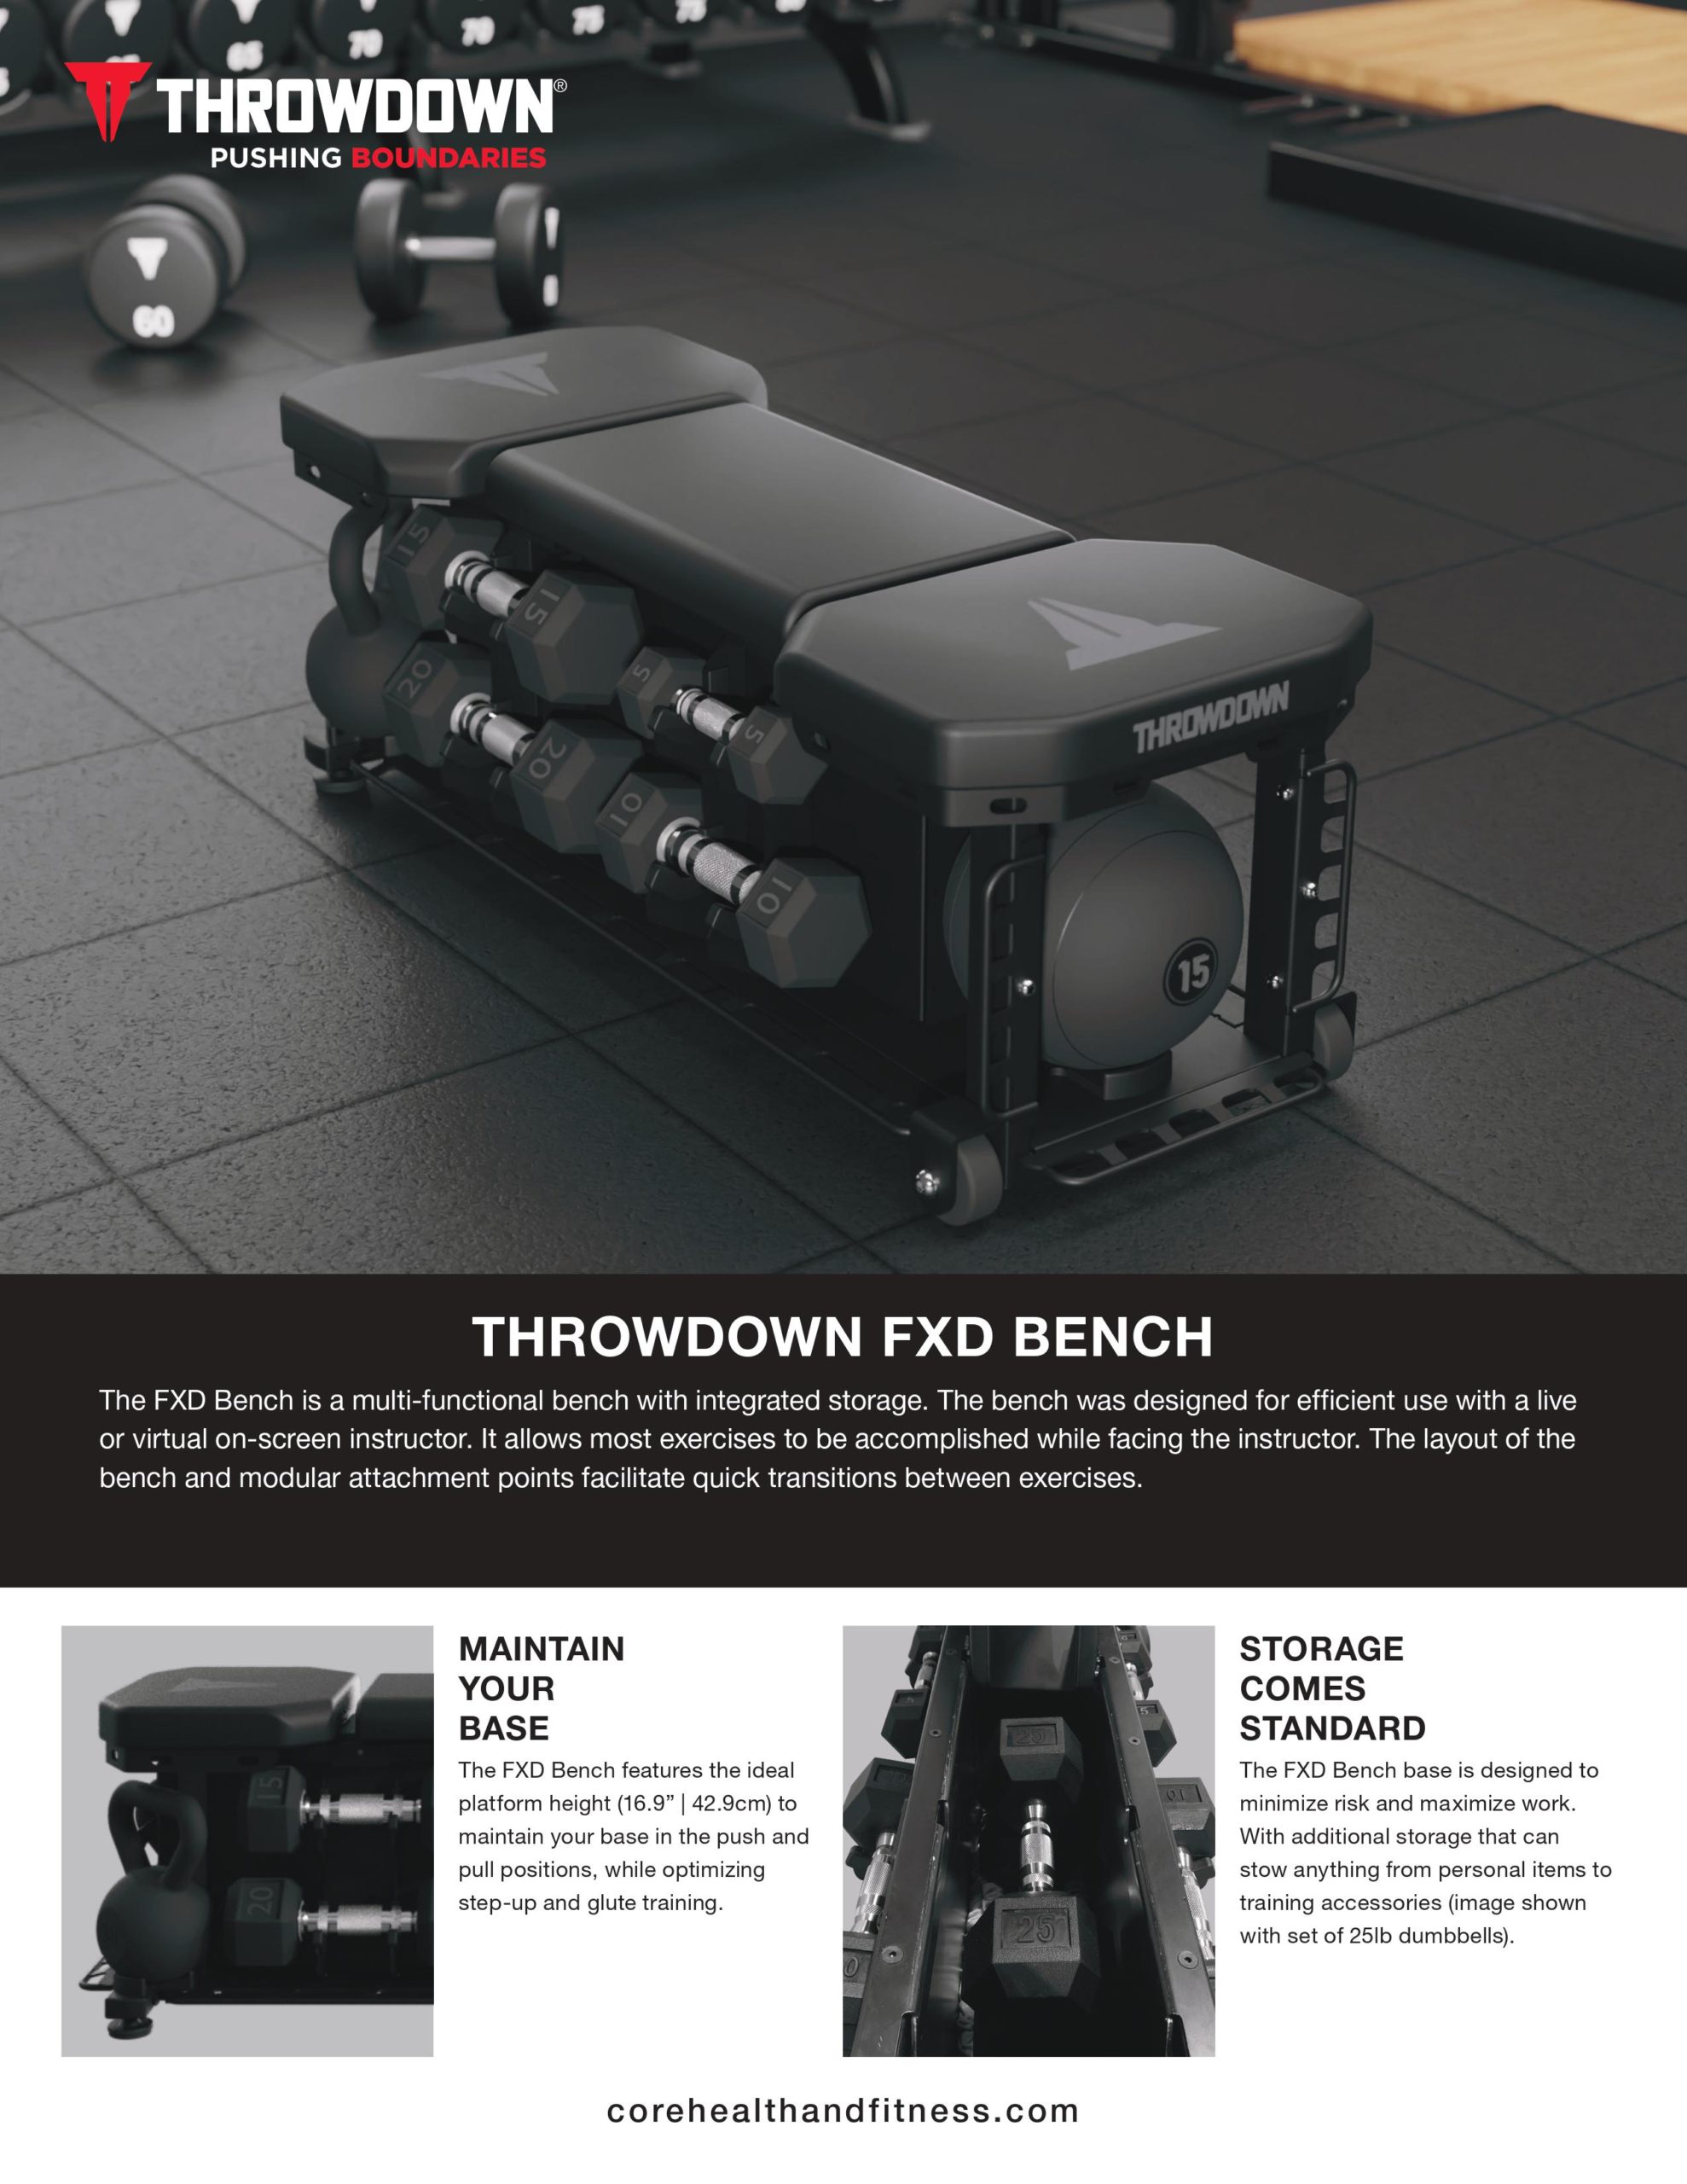 Throwdown FXD Bench features